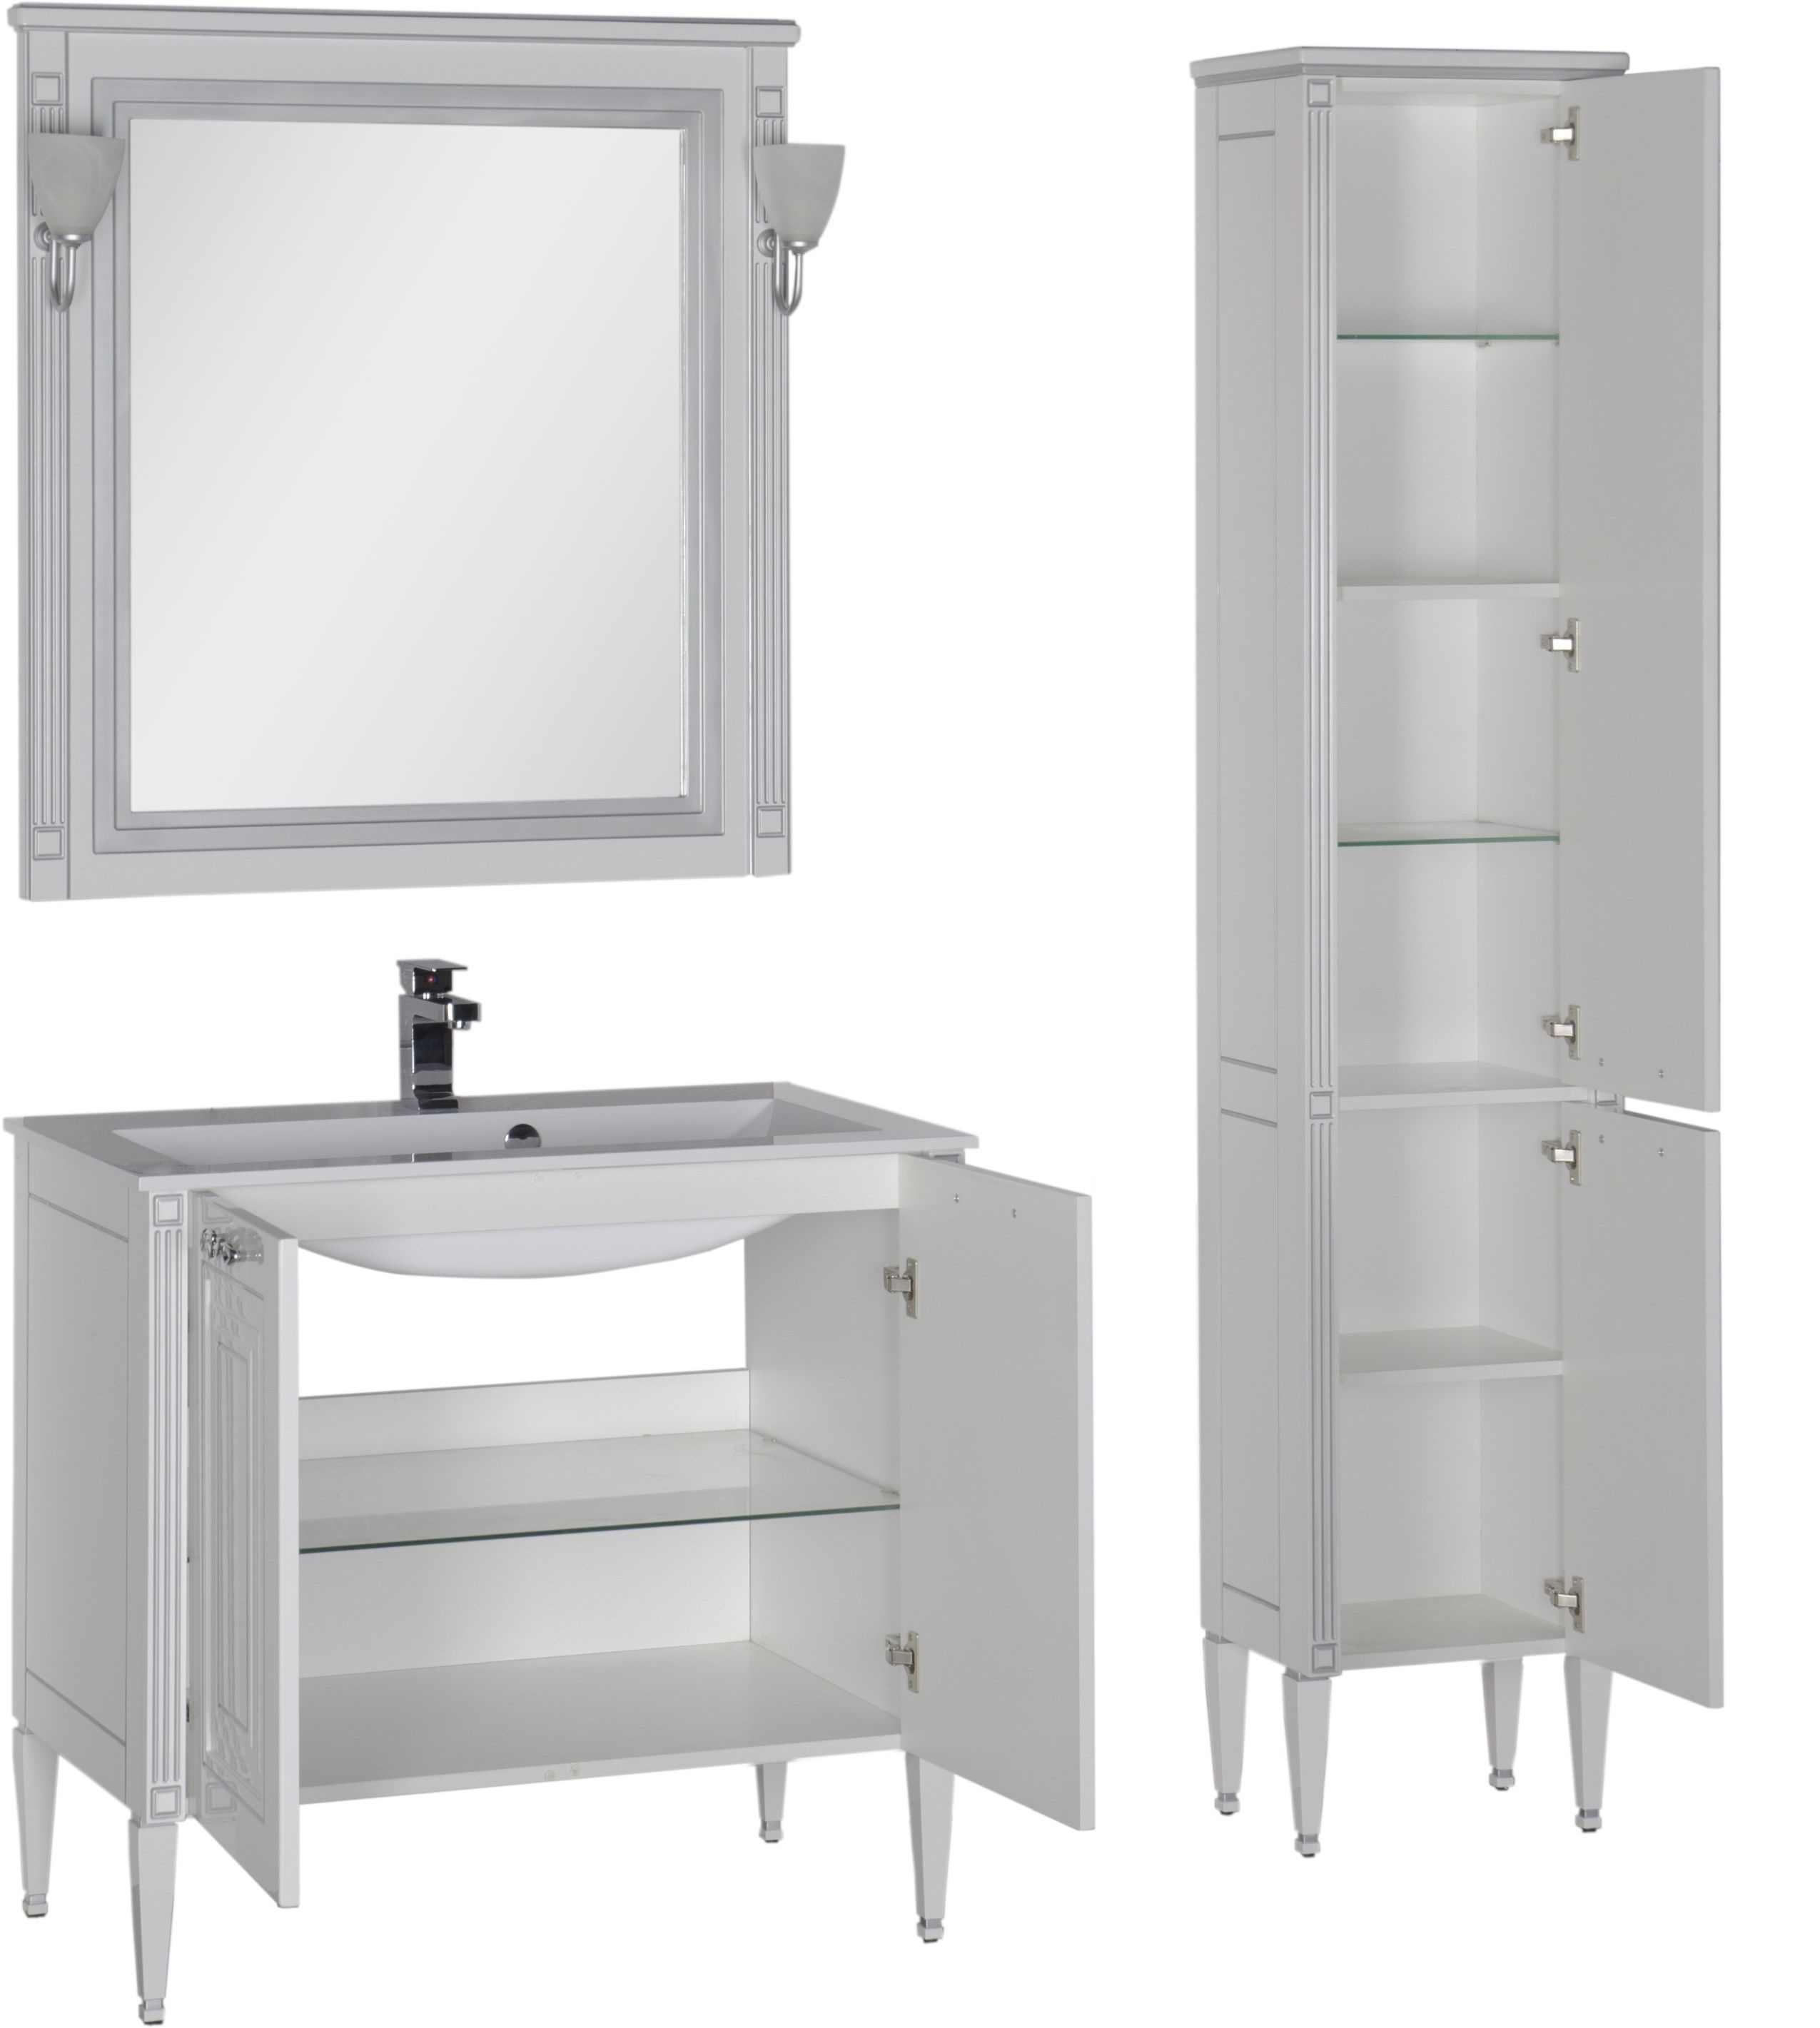 Комплект мебели для ванной Aquanet Паола 90 белый патина серебро